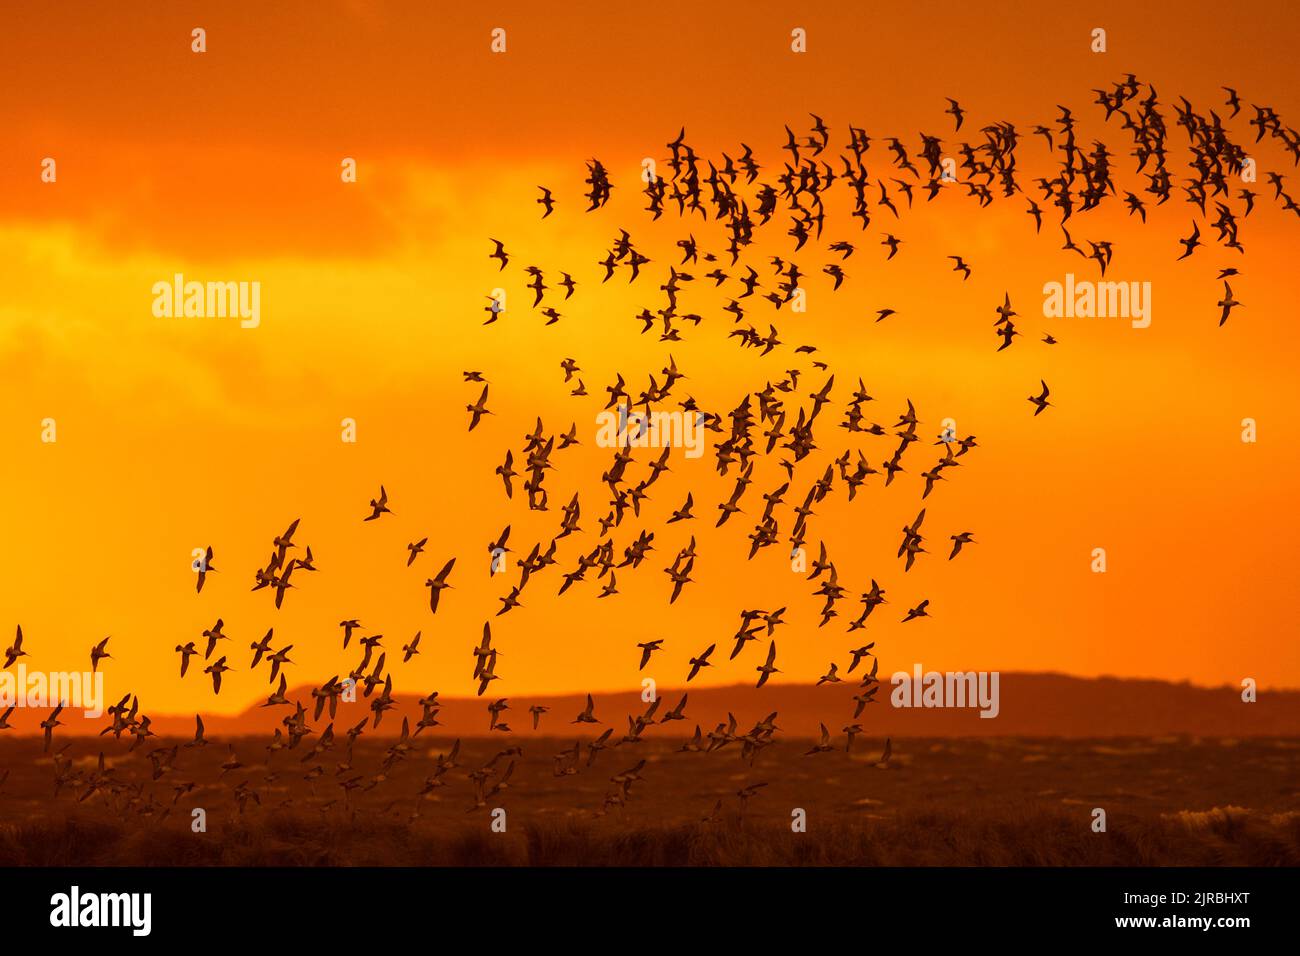 Un énorme troupeau de godwits à queue de bar (Limosa lapponica) et de nœuds rouges en vol, silhoueted contre le ciel orangé de coucher de soleil le long de la côte de la mer du Nord au printemps Banque D'Images